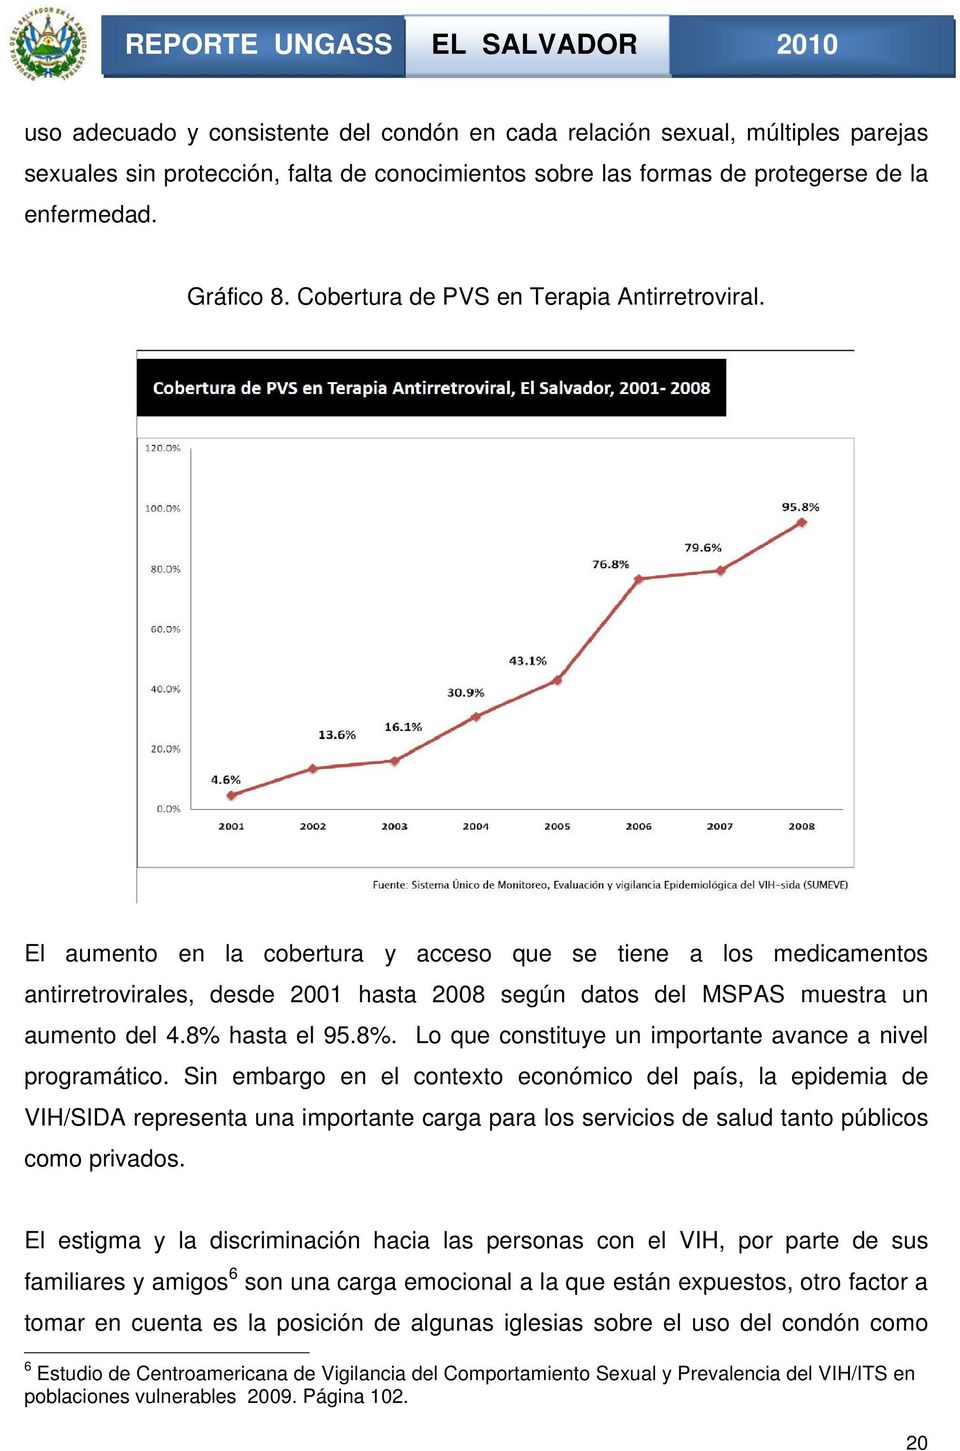 El aumento en la cobertura y acceso que se tiene a los medicamentos antirretrovirales, desde 2001 hasta 2008 según datos del MSPAS muestra un aumento del 4.8% 